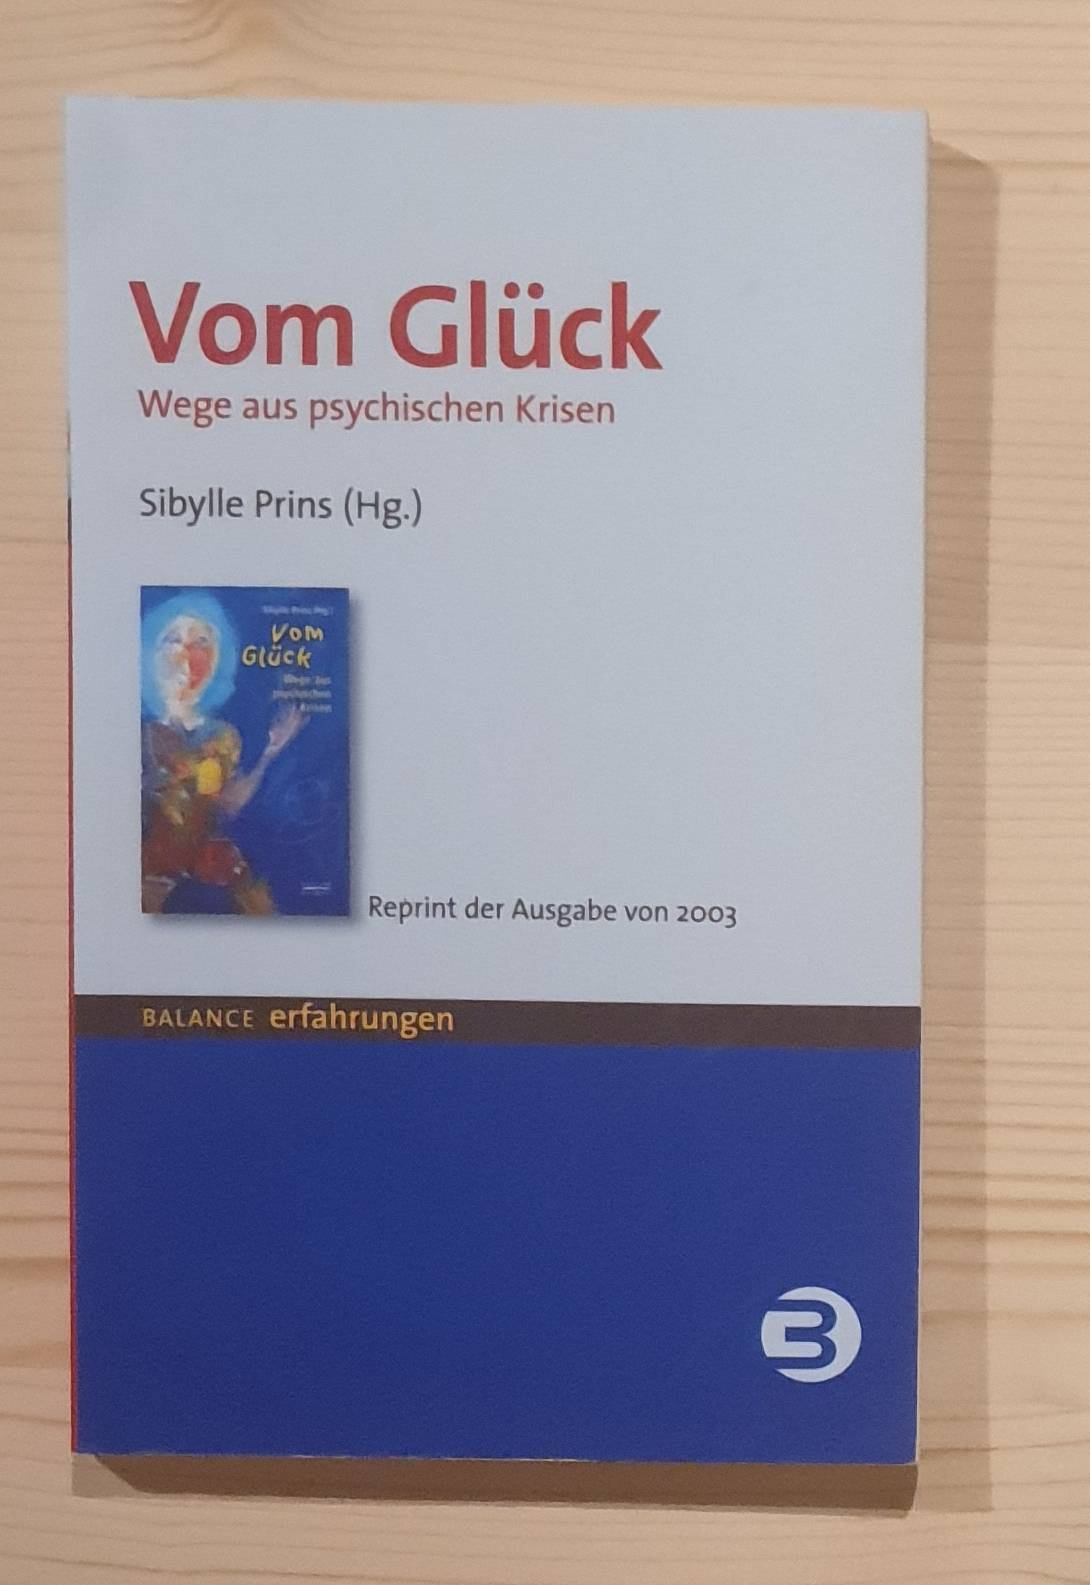 Prins, Sibylle (Herausgeber):  Vom Glück : Wege aus psychischen Krisen. Sybille Prins (Hg.) / Edition Balance 